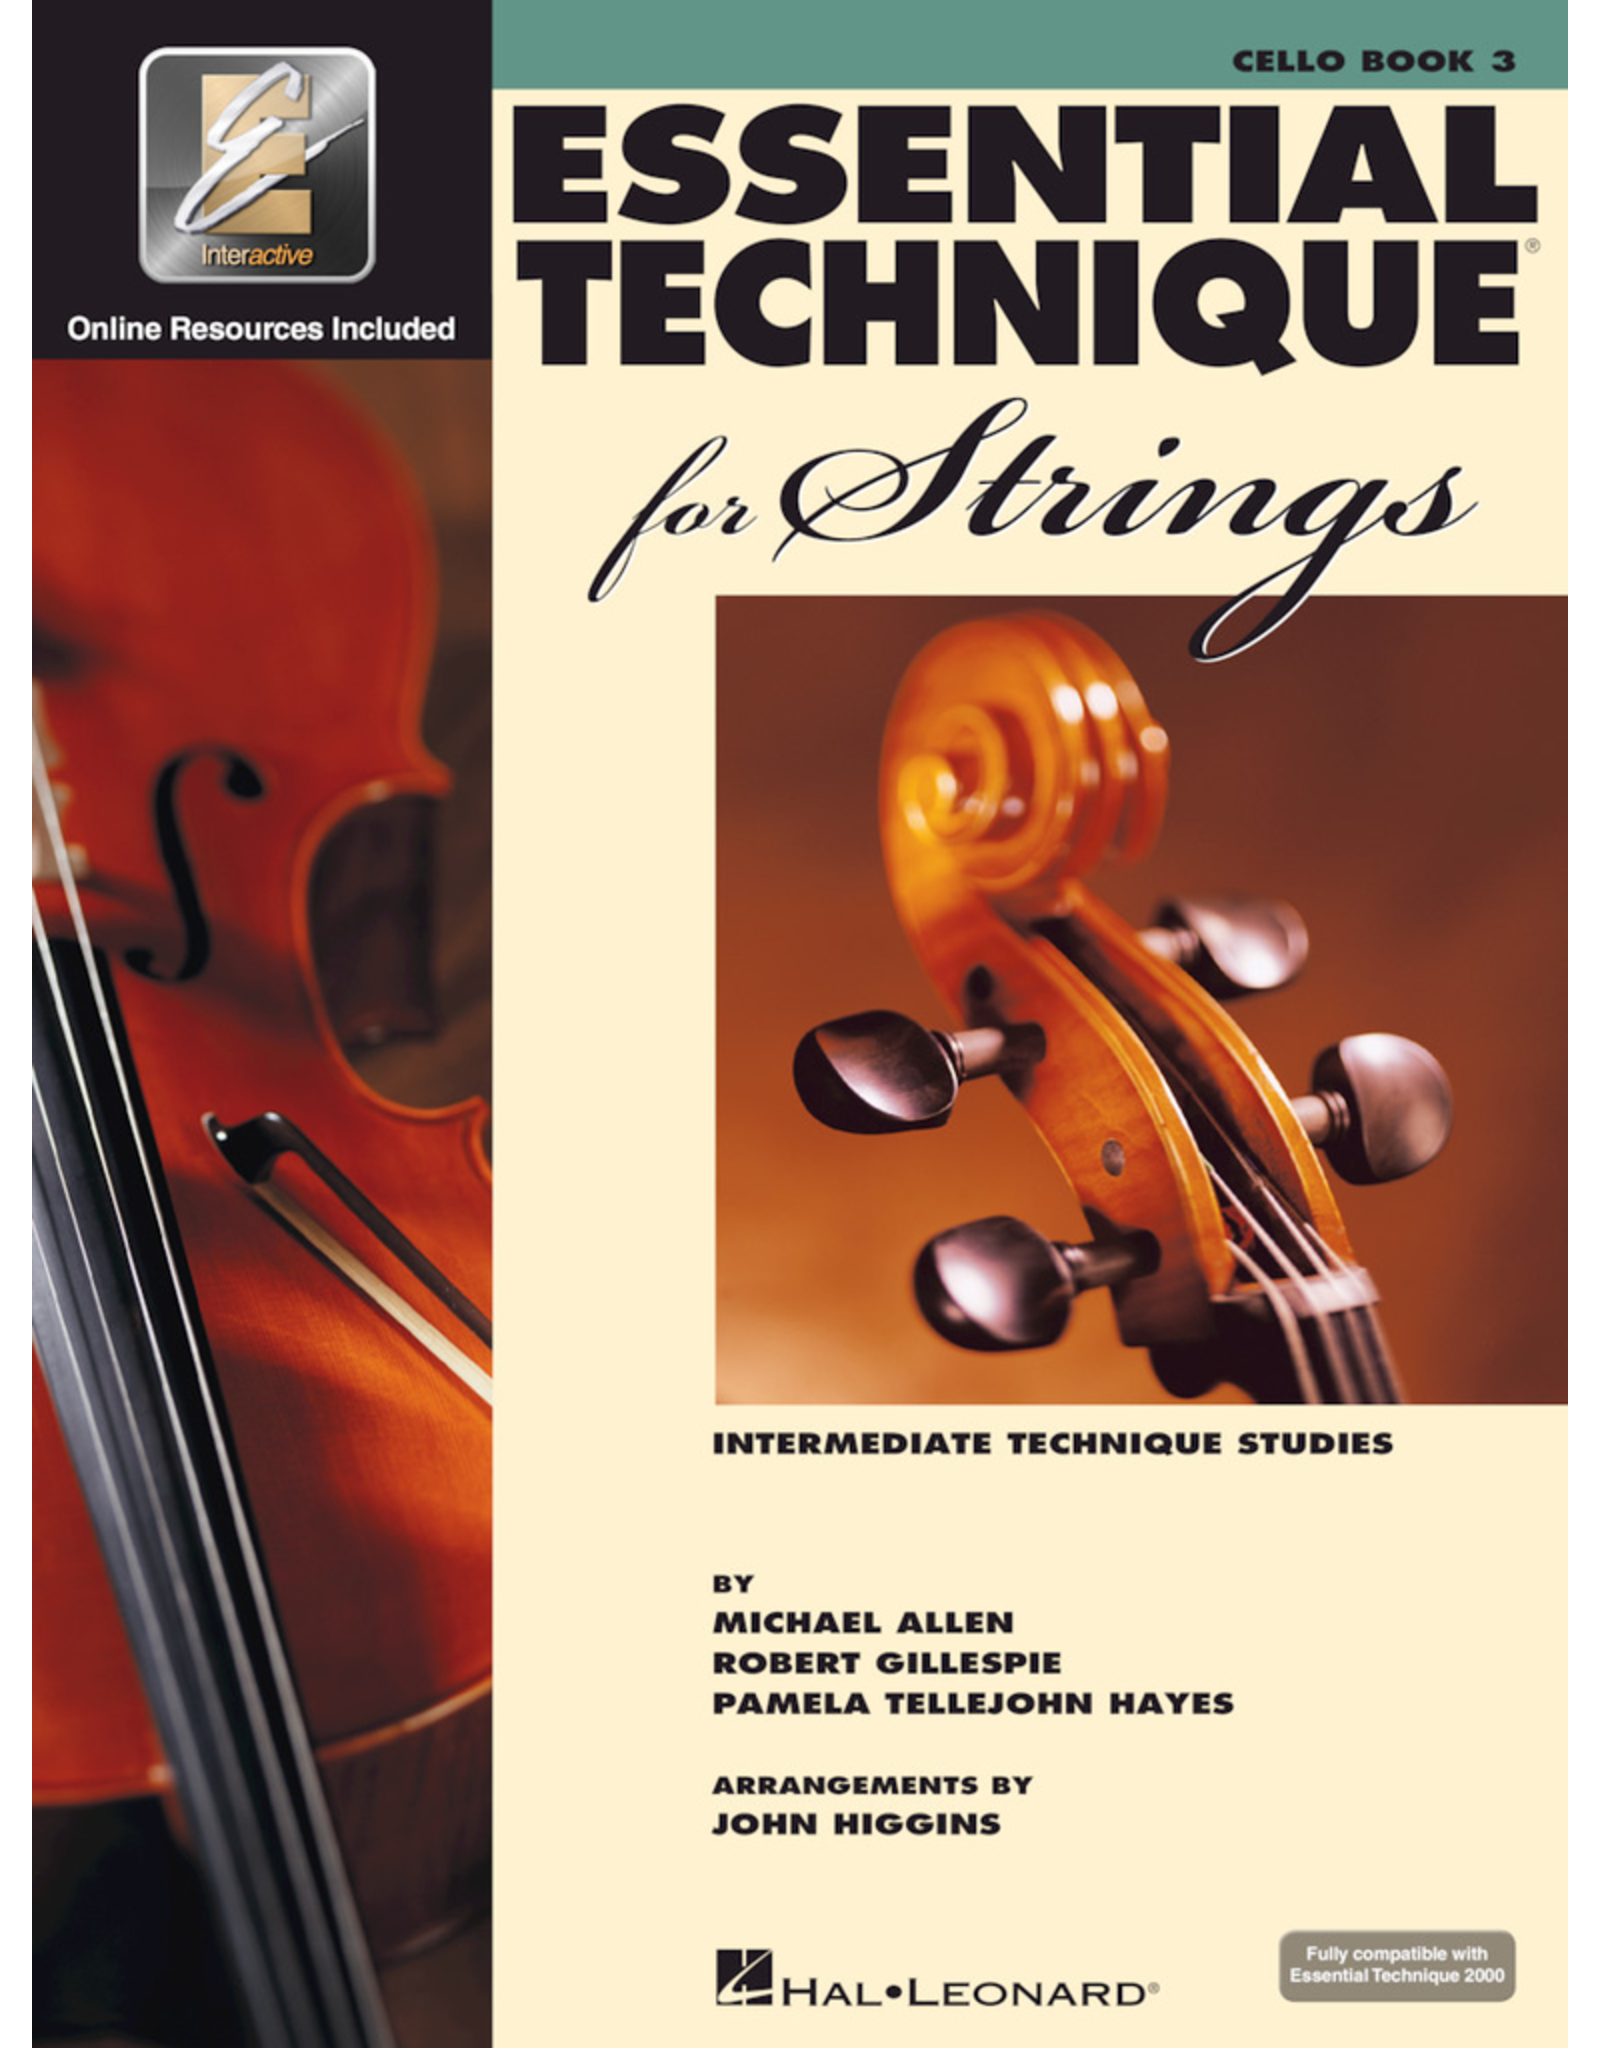 Essential Technique 2000 For Strings Cello Book 3 